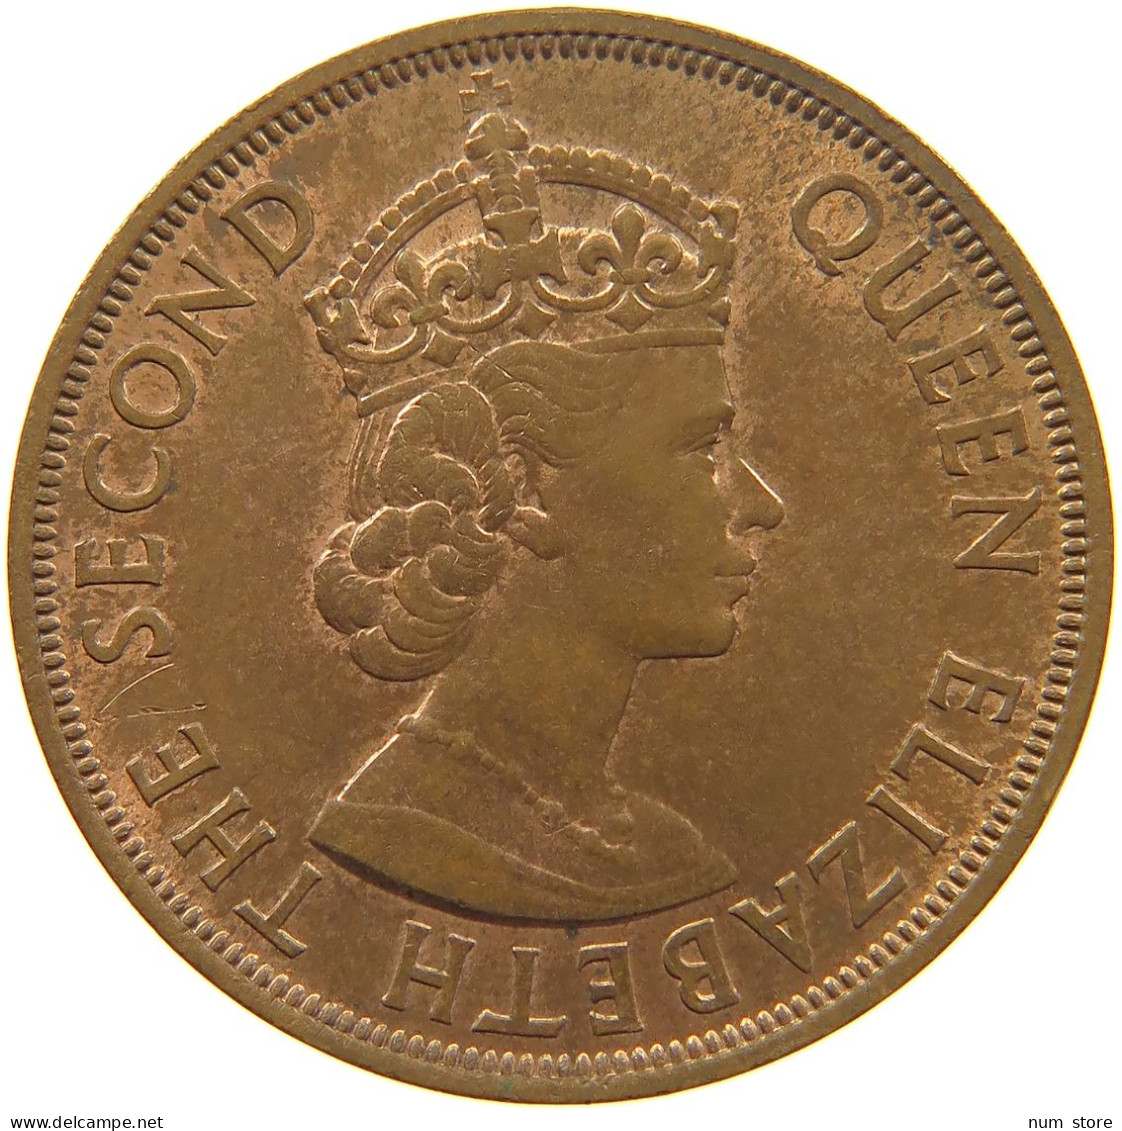 BRITISH CARIBBEAN TERRITORIES 2 CENTS 1960 Elizabeth II. (1952-2022) #c014 0455 - Caribe Británica (Territorios Del)